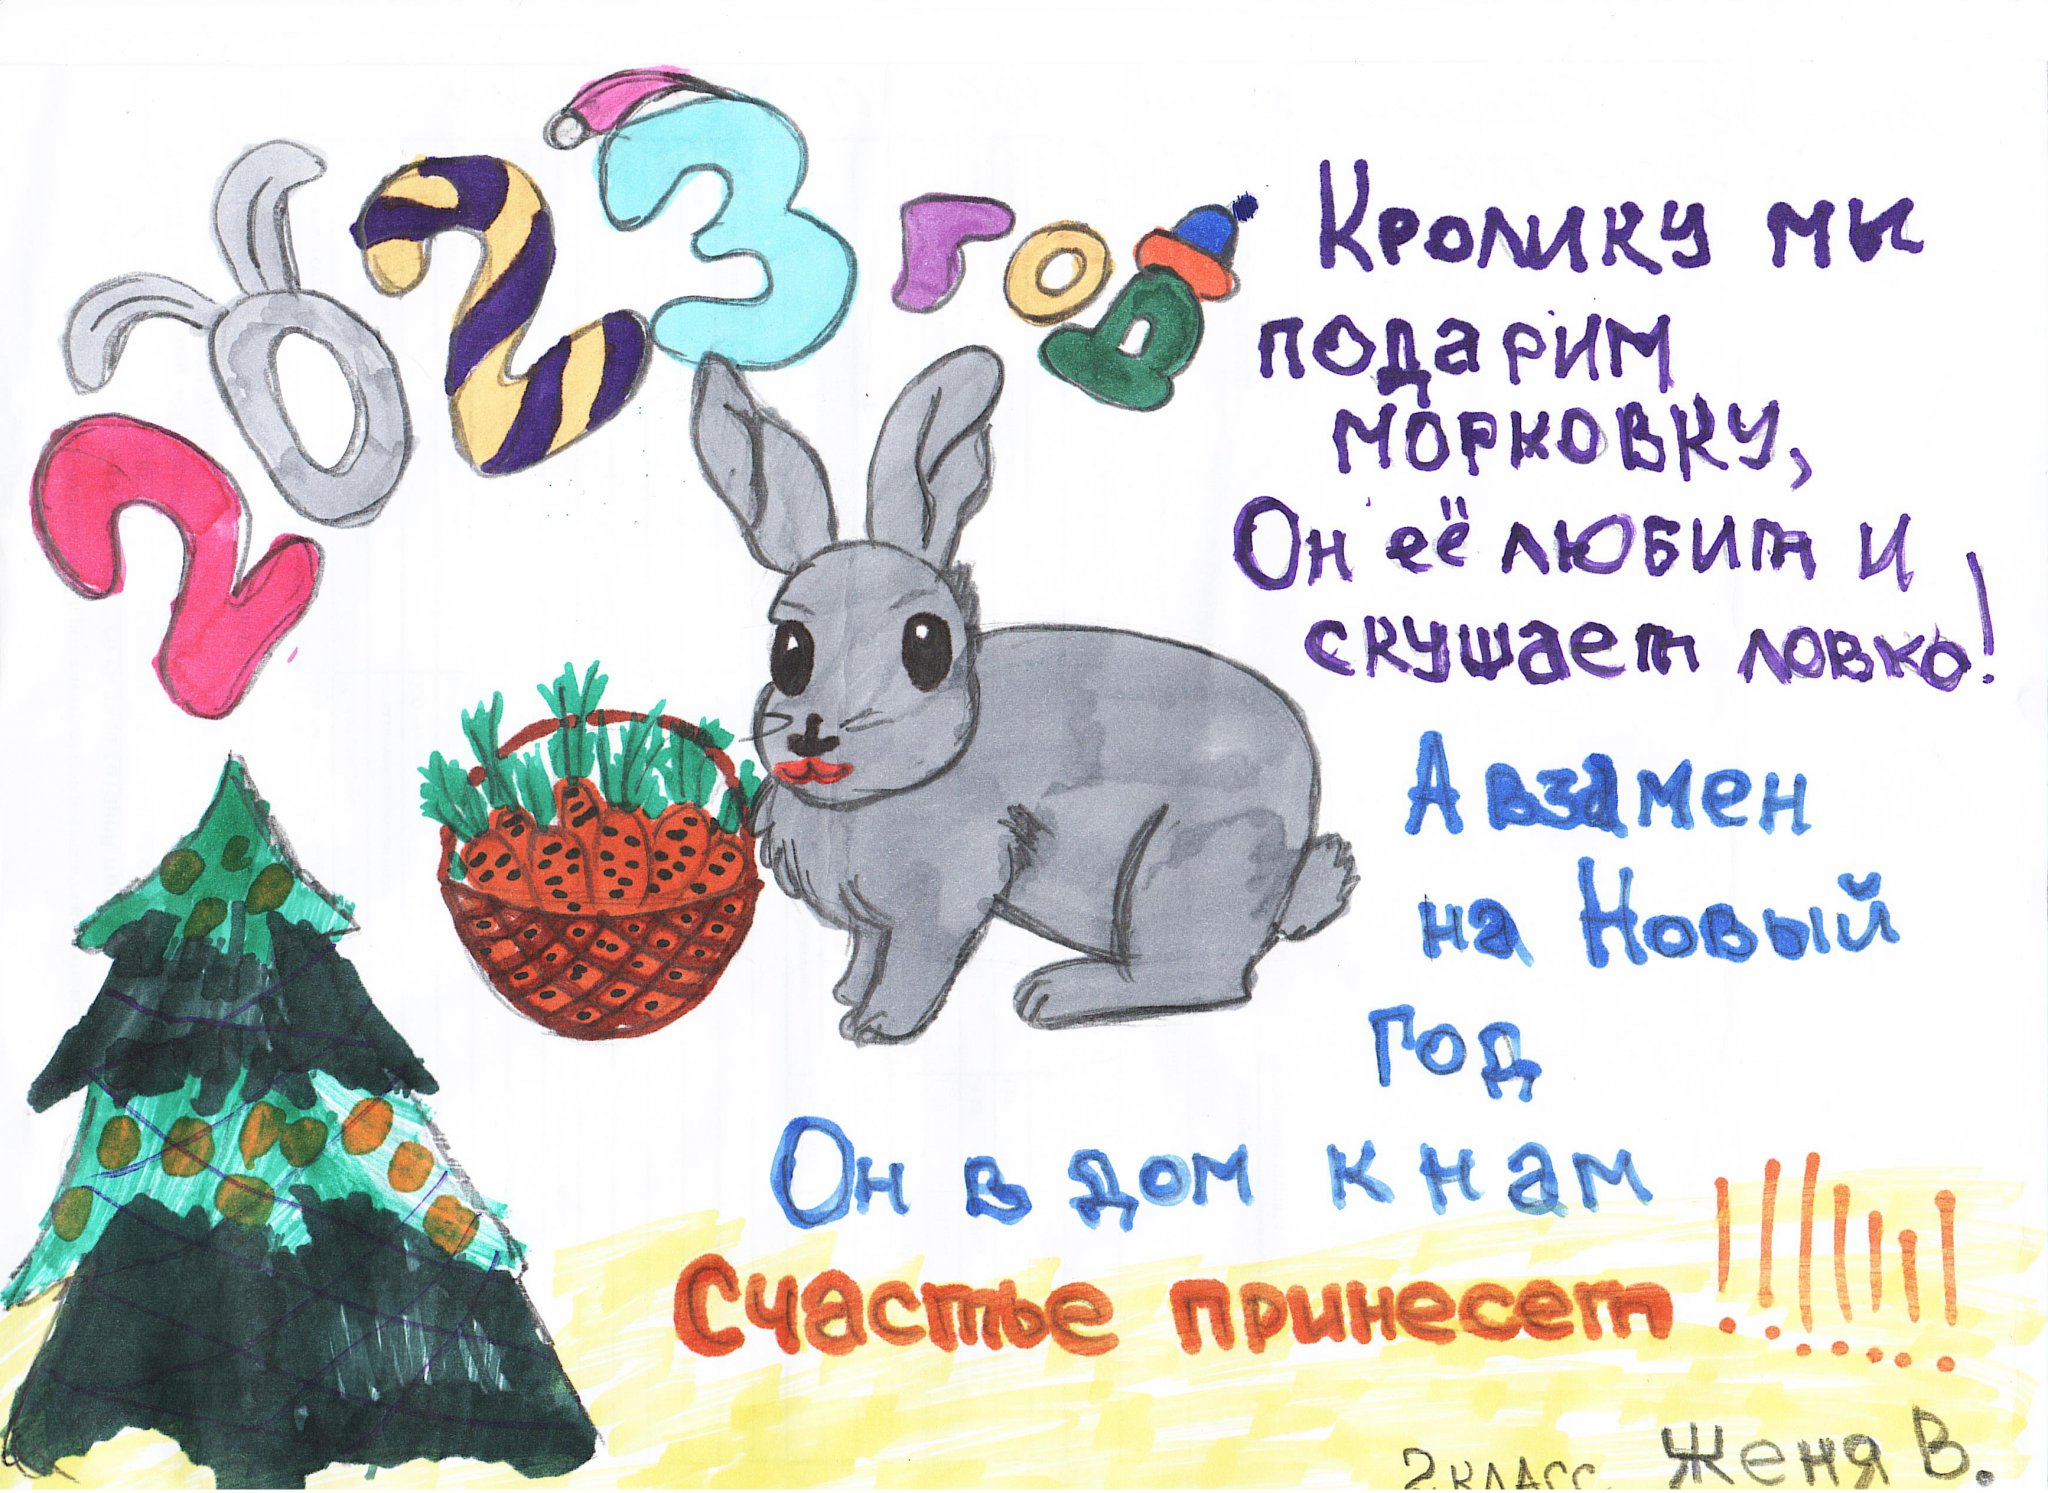 24 год год кролика. Год кролика. Плакат к новому году год кролика. Плакат на НГ С кроликом. Плакат к НГ кролика рисунок.